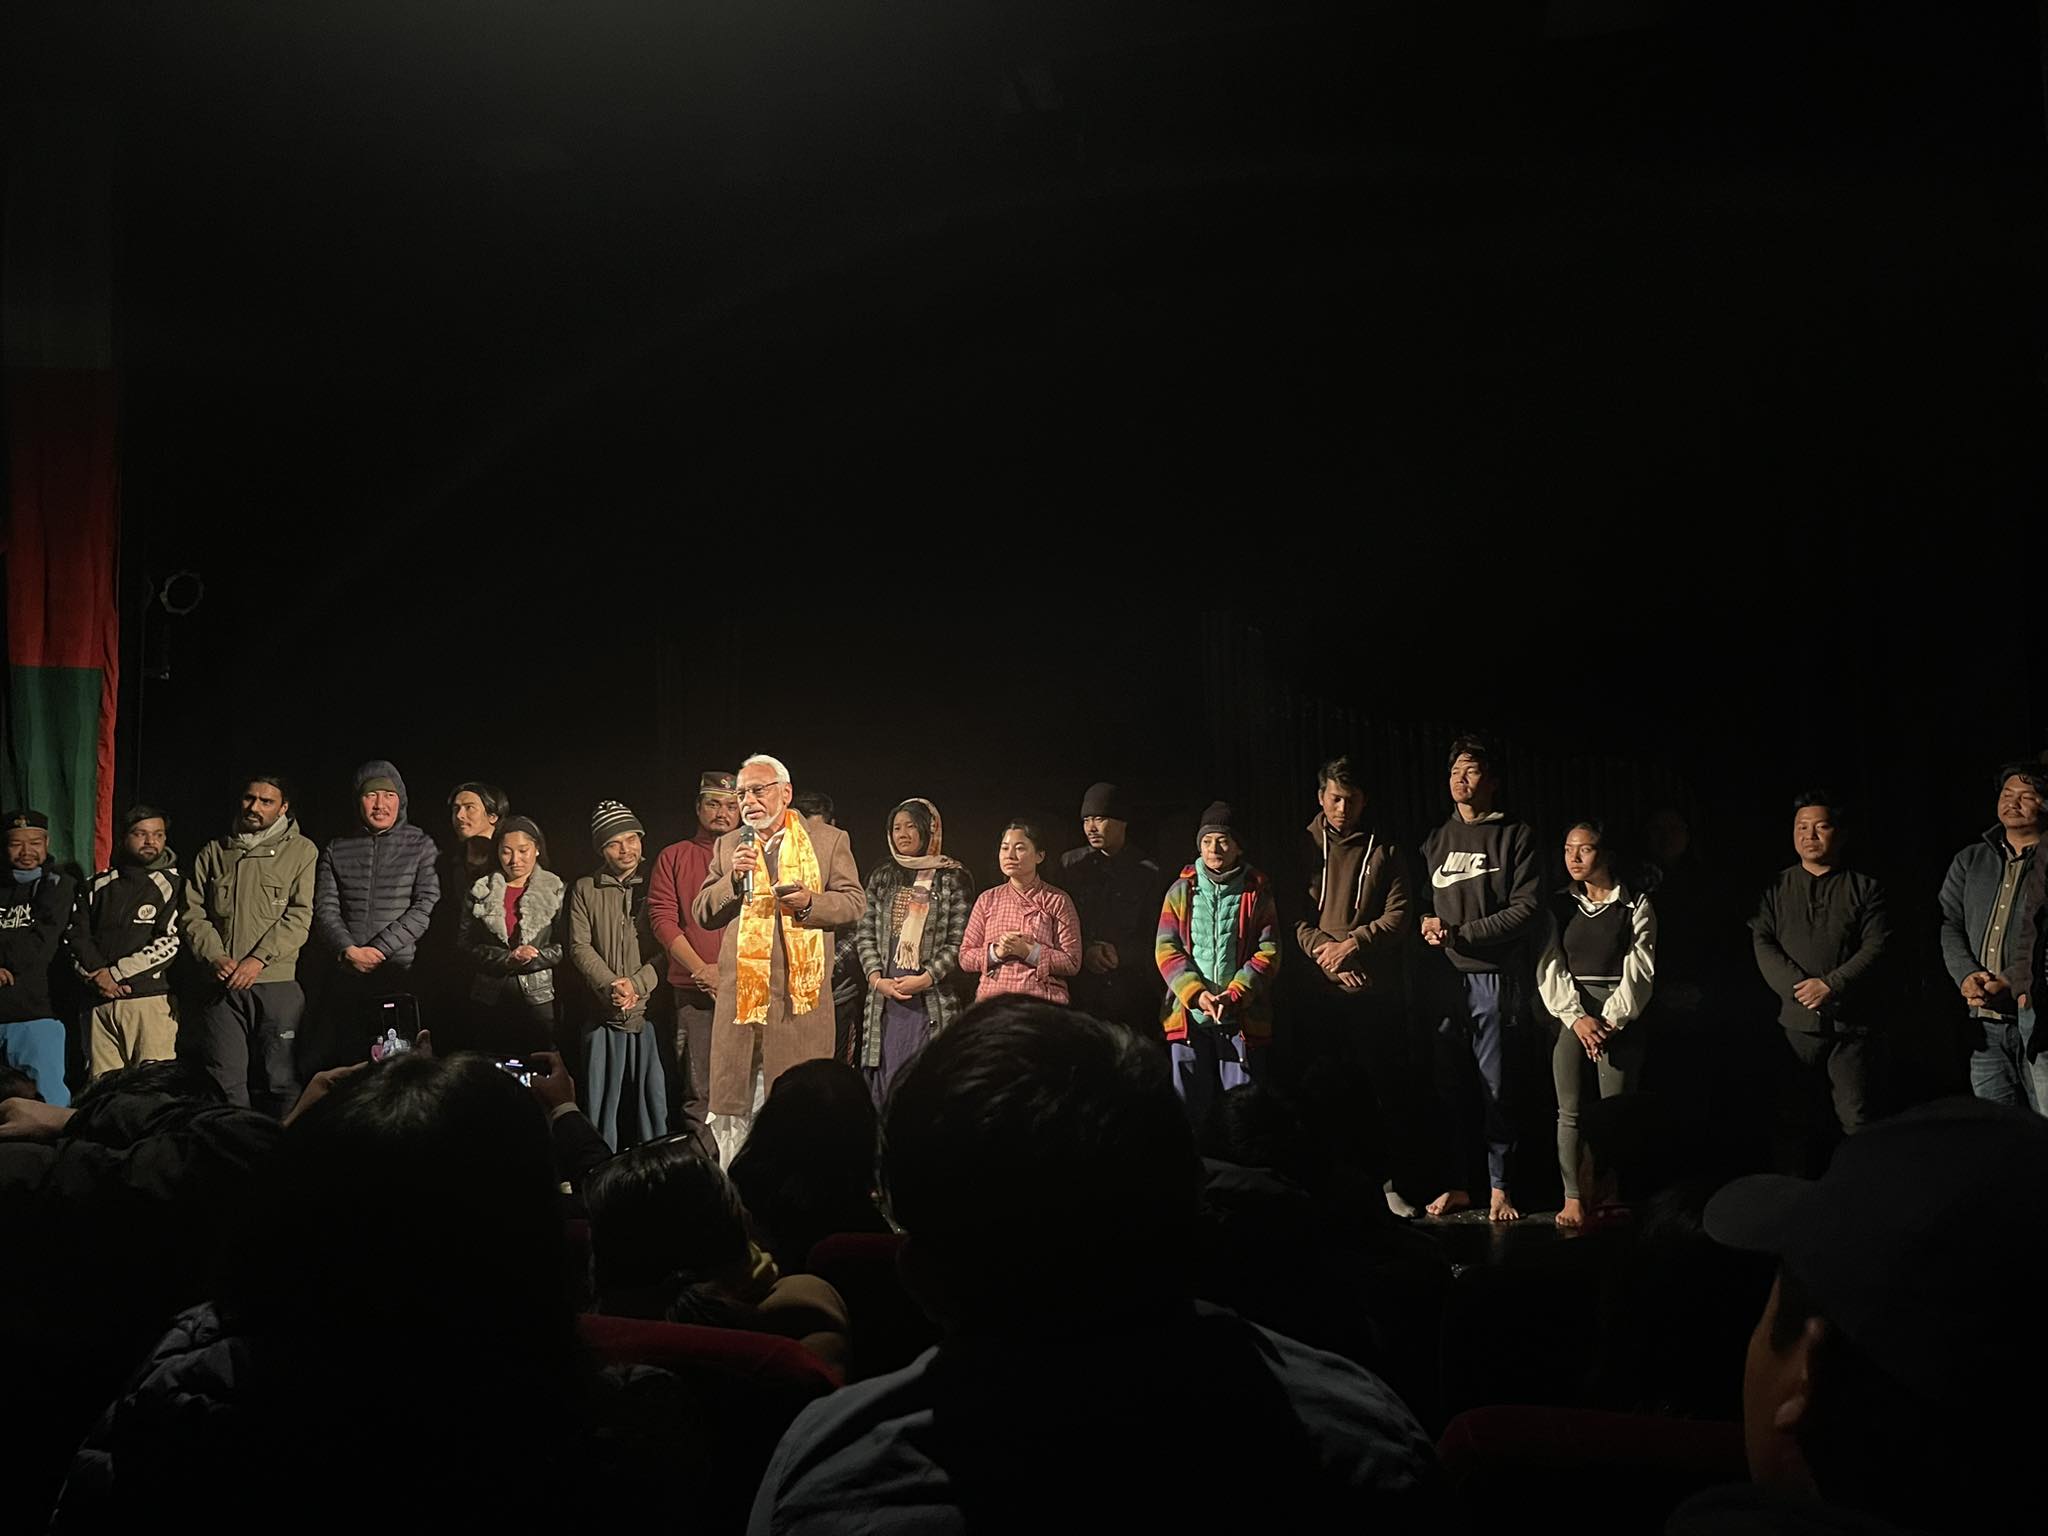 तामाङ समुदायको दलनको कथामा बनेको नाटक 'मासिन्या' को विशेष मञ्चन